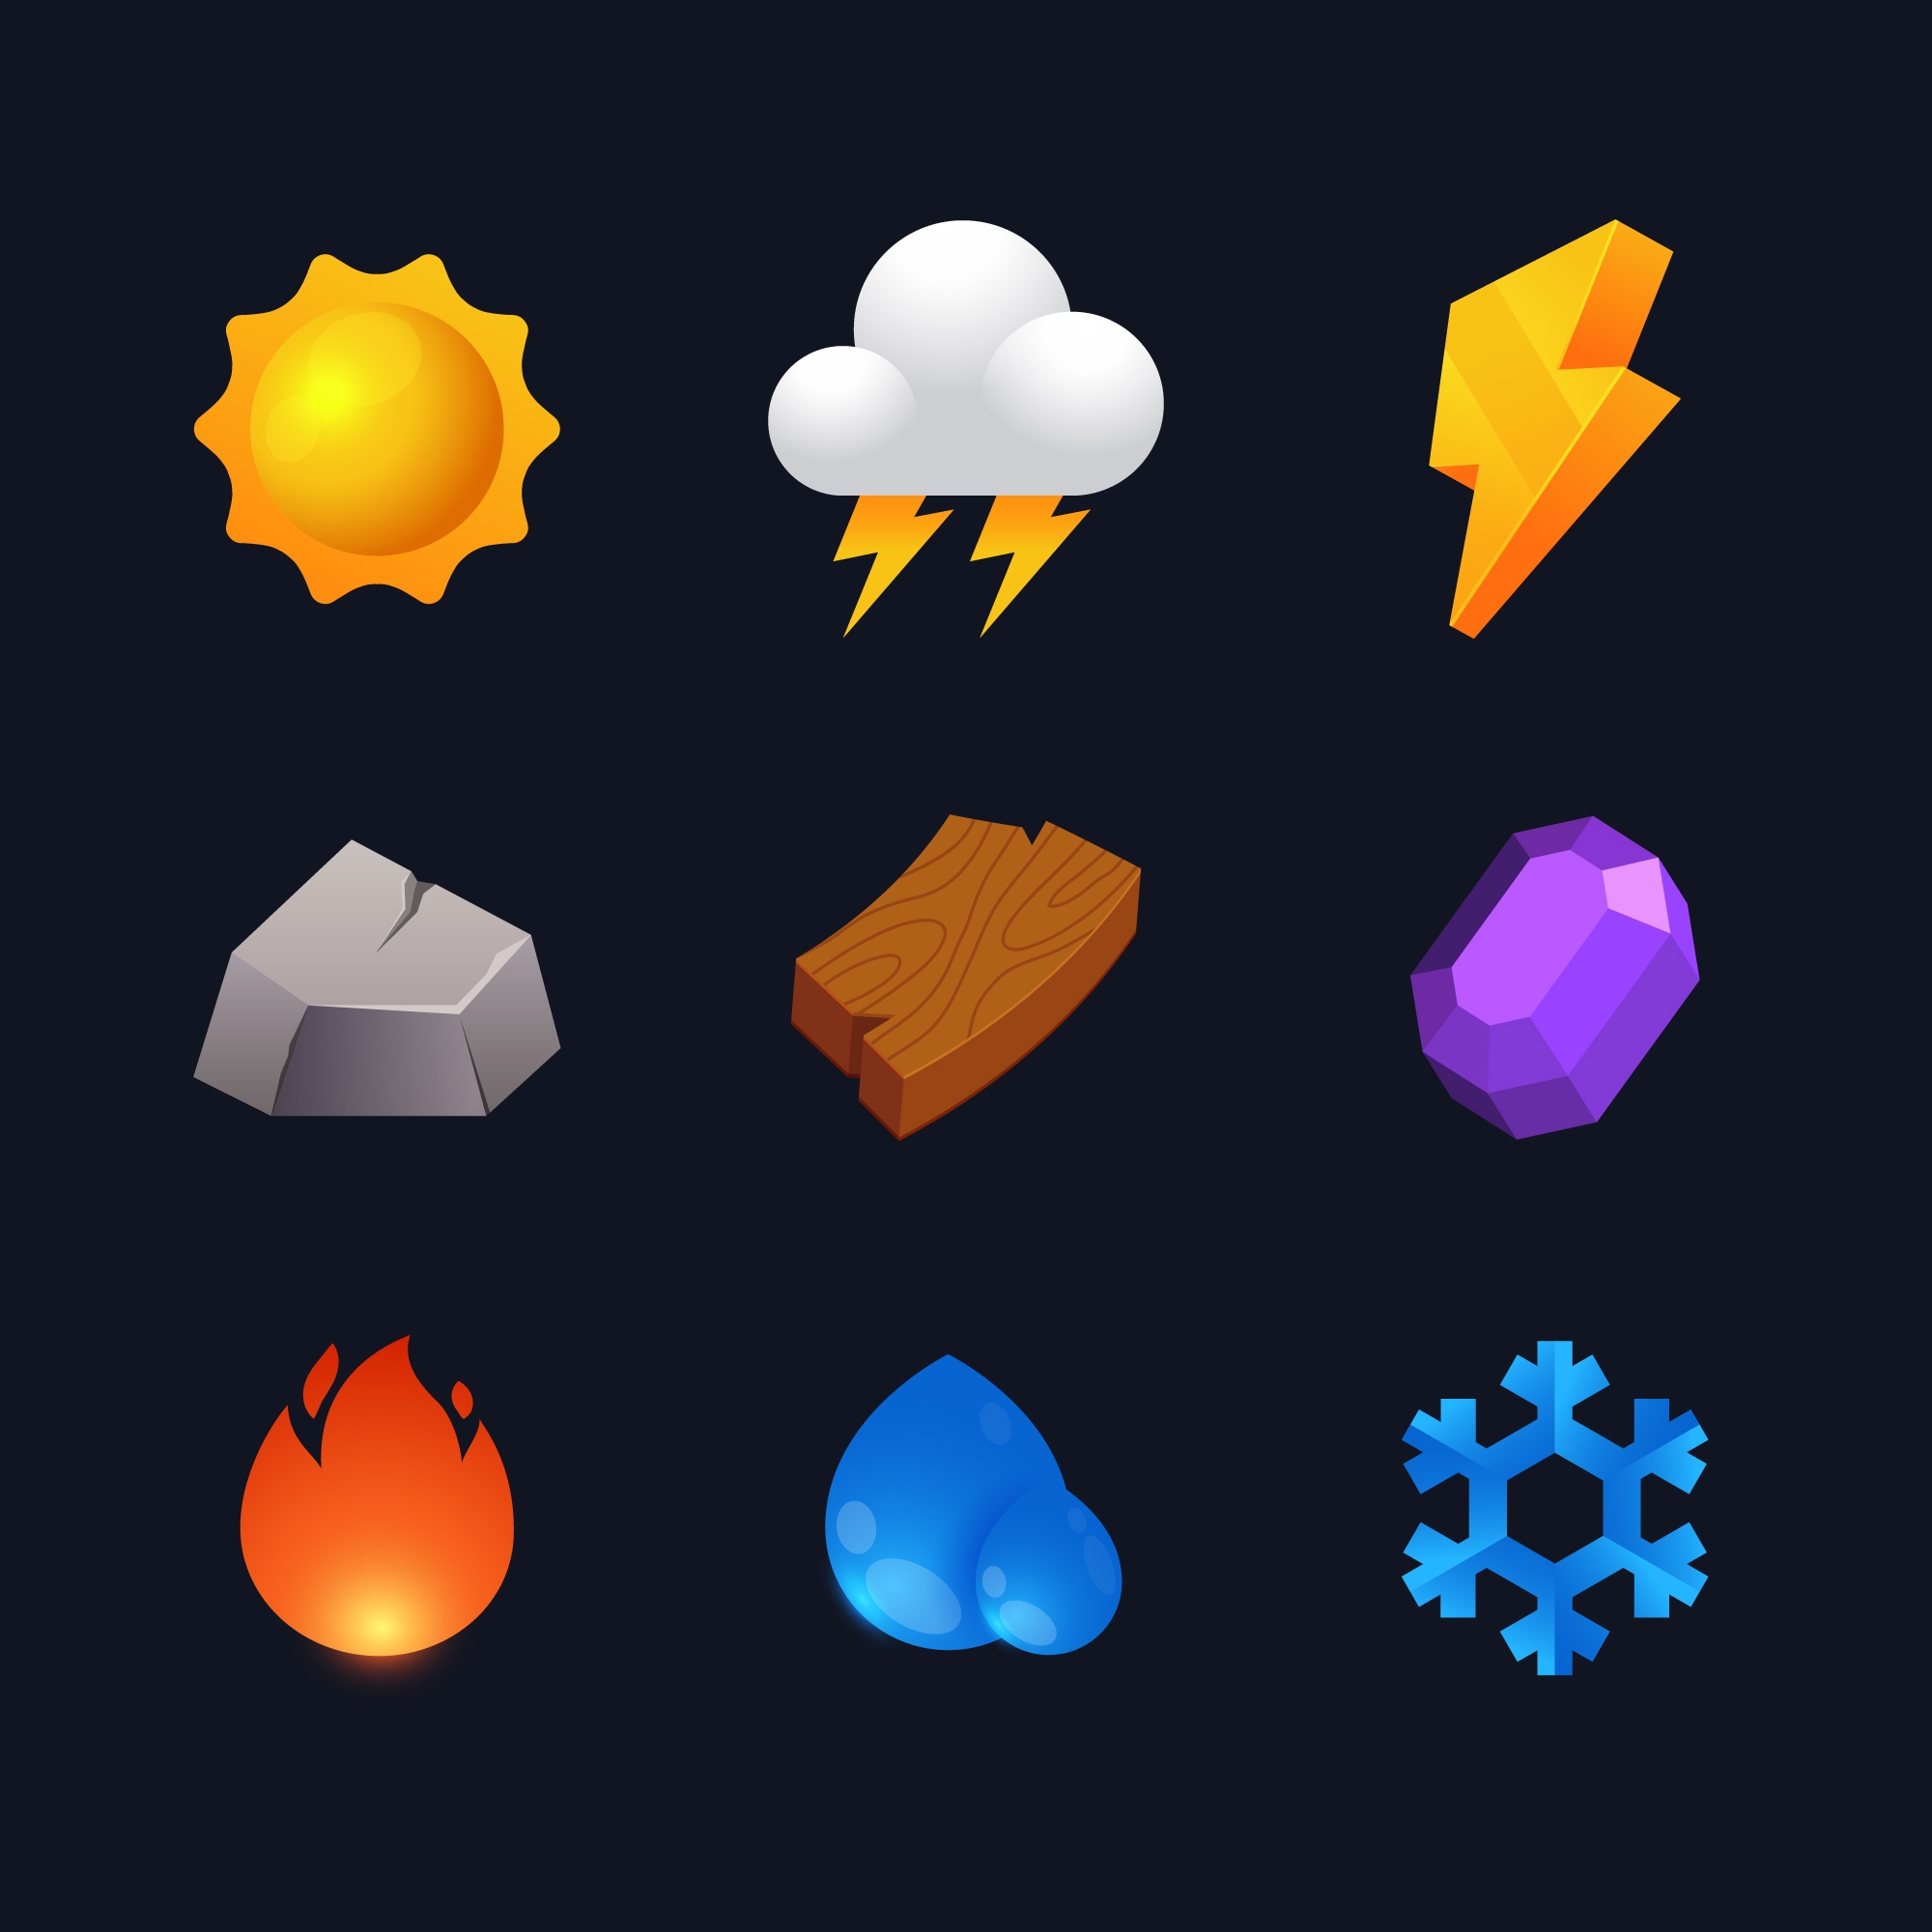 3D Weather Elements Set